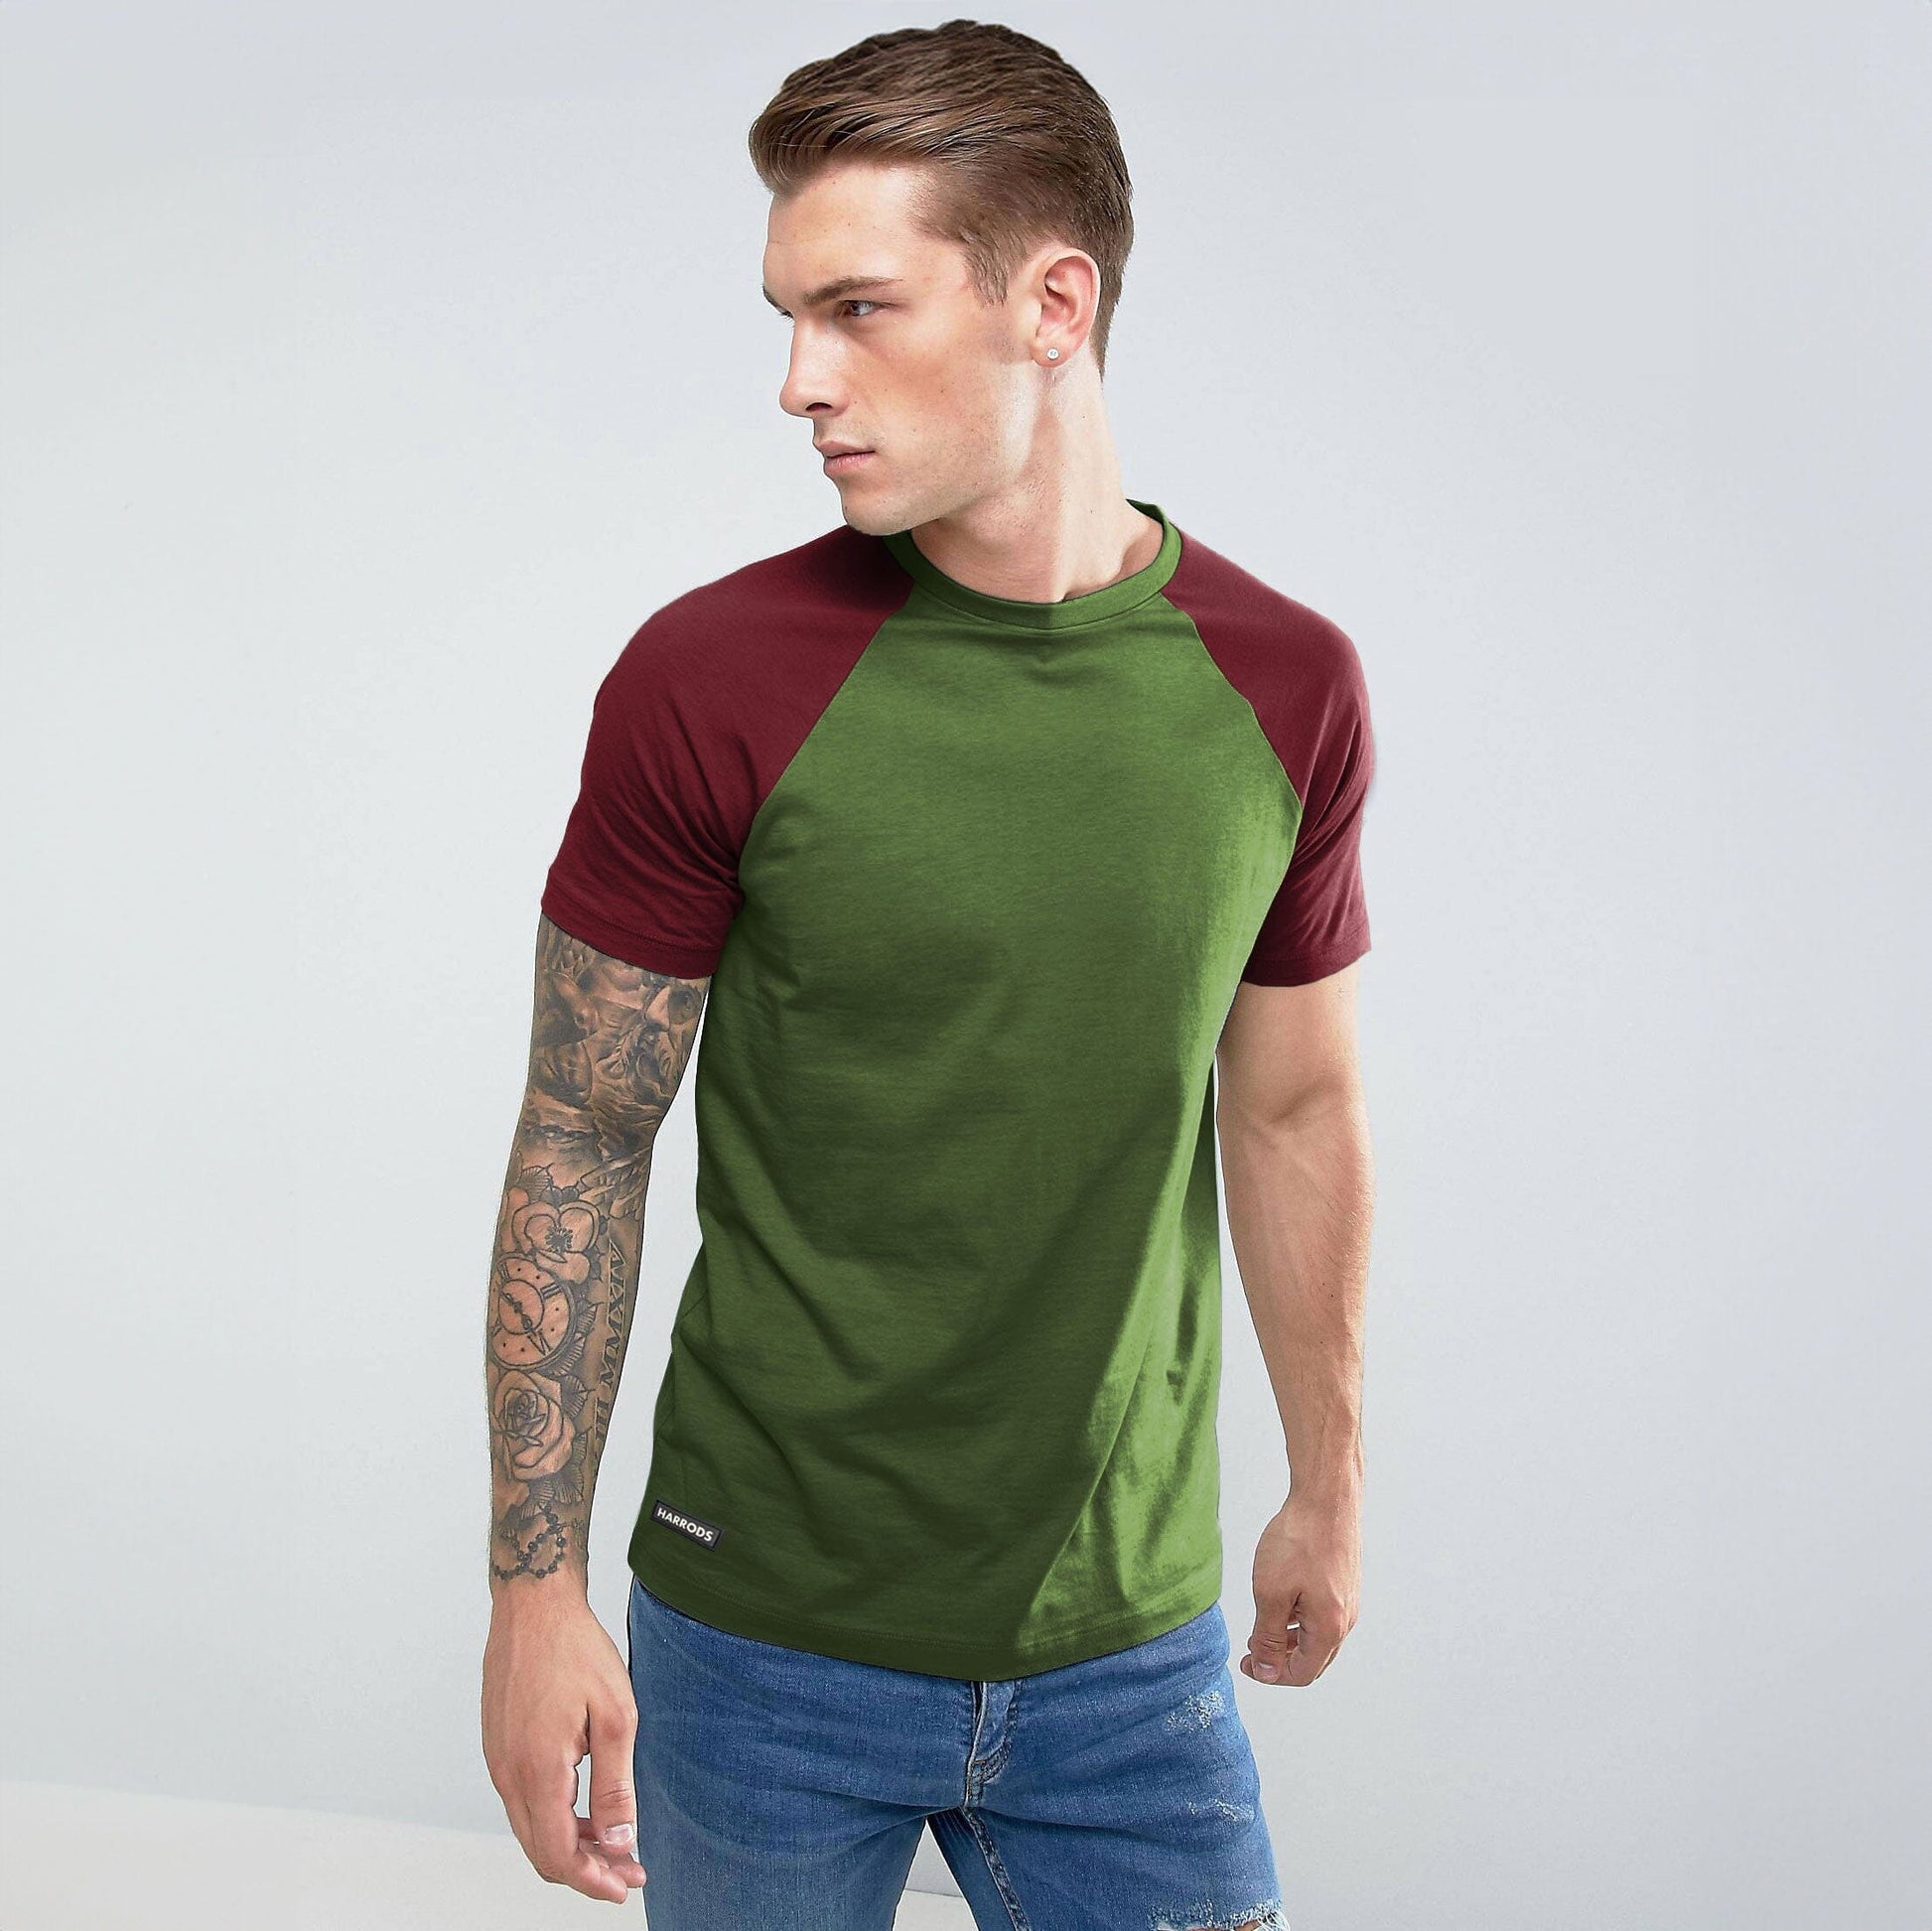 Harrods Men's Contrast Sleeve Style Crew Neck Tee Shirt Men's Tee Shirt IBT Bottle Green S 